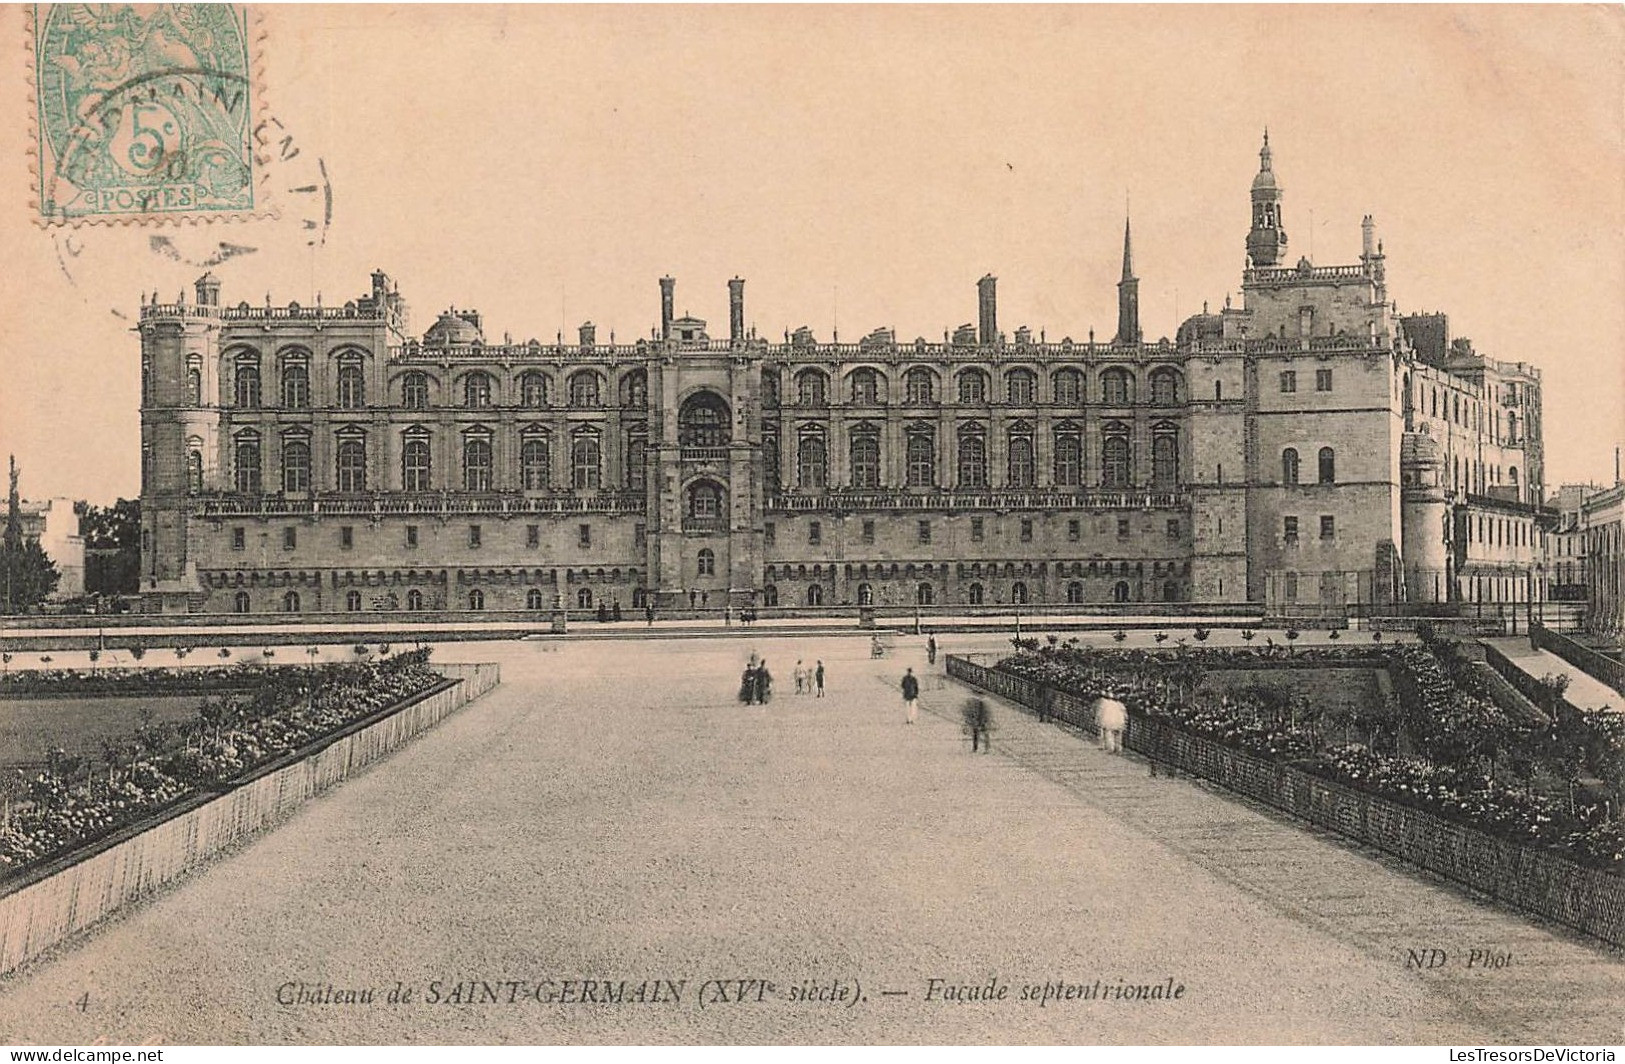 FRANCE - Château De Saint Germain (XVIè Siècle) - Façade Septentoriale - Animé - Carte Postale Ancienne - St. Germain En Laye (Castello)